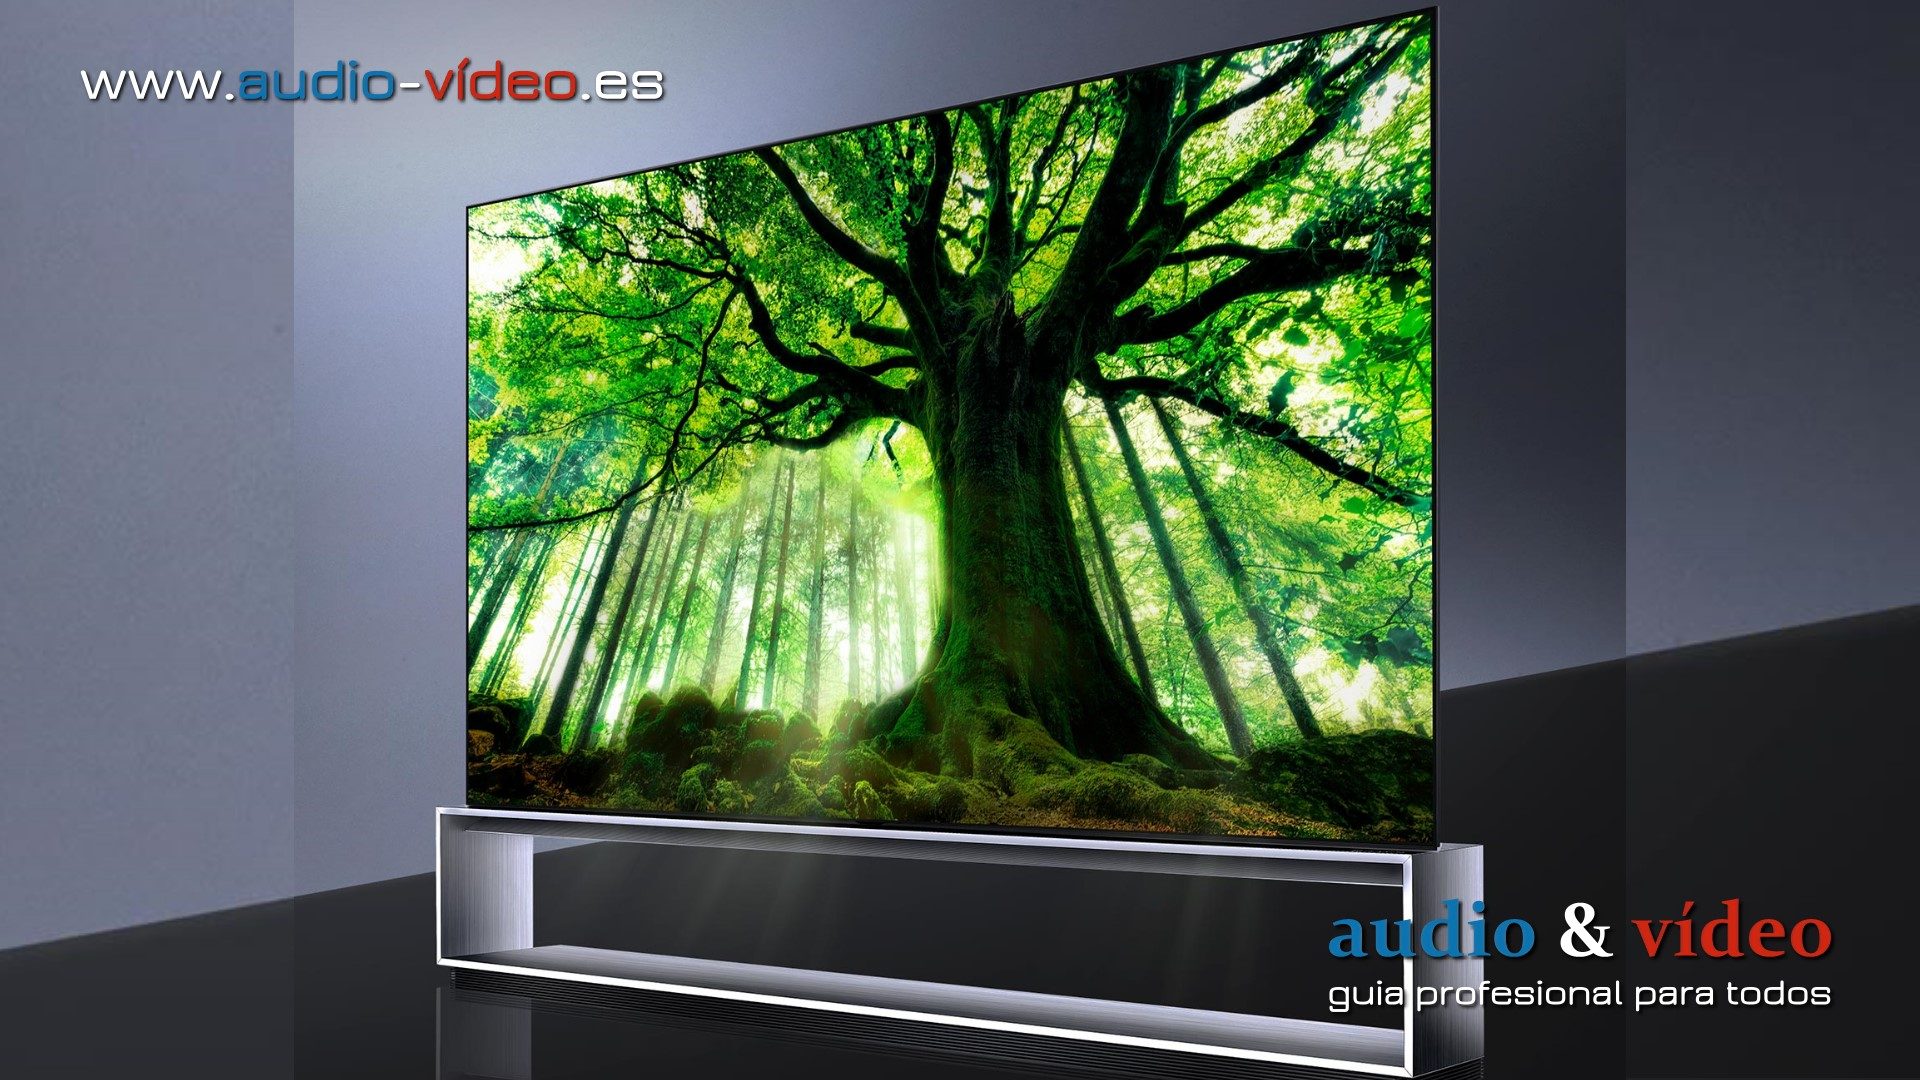 LG presenta precios a su gama de los televisores OLED a 2020.